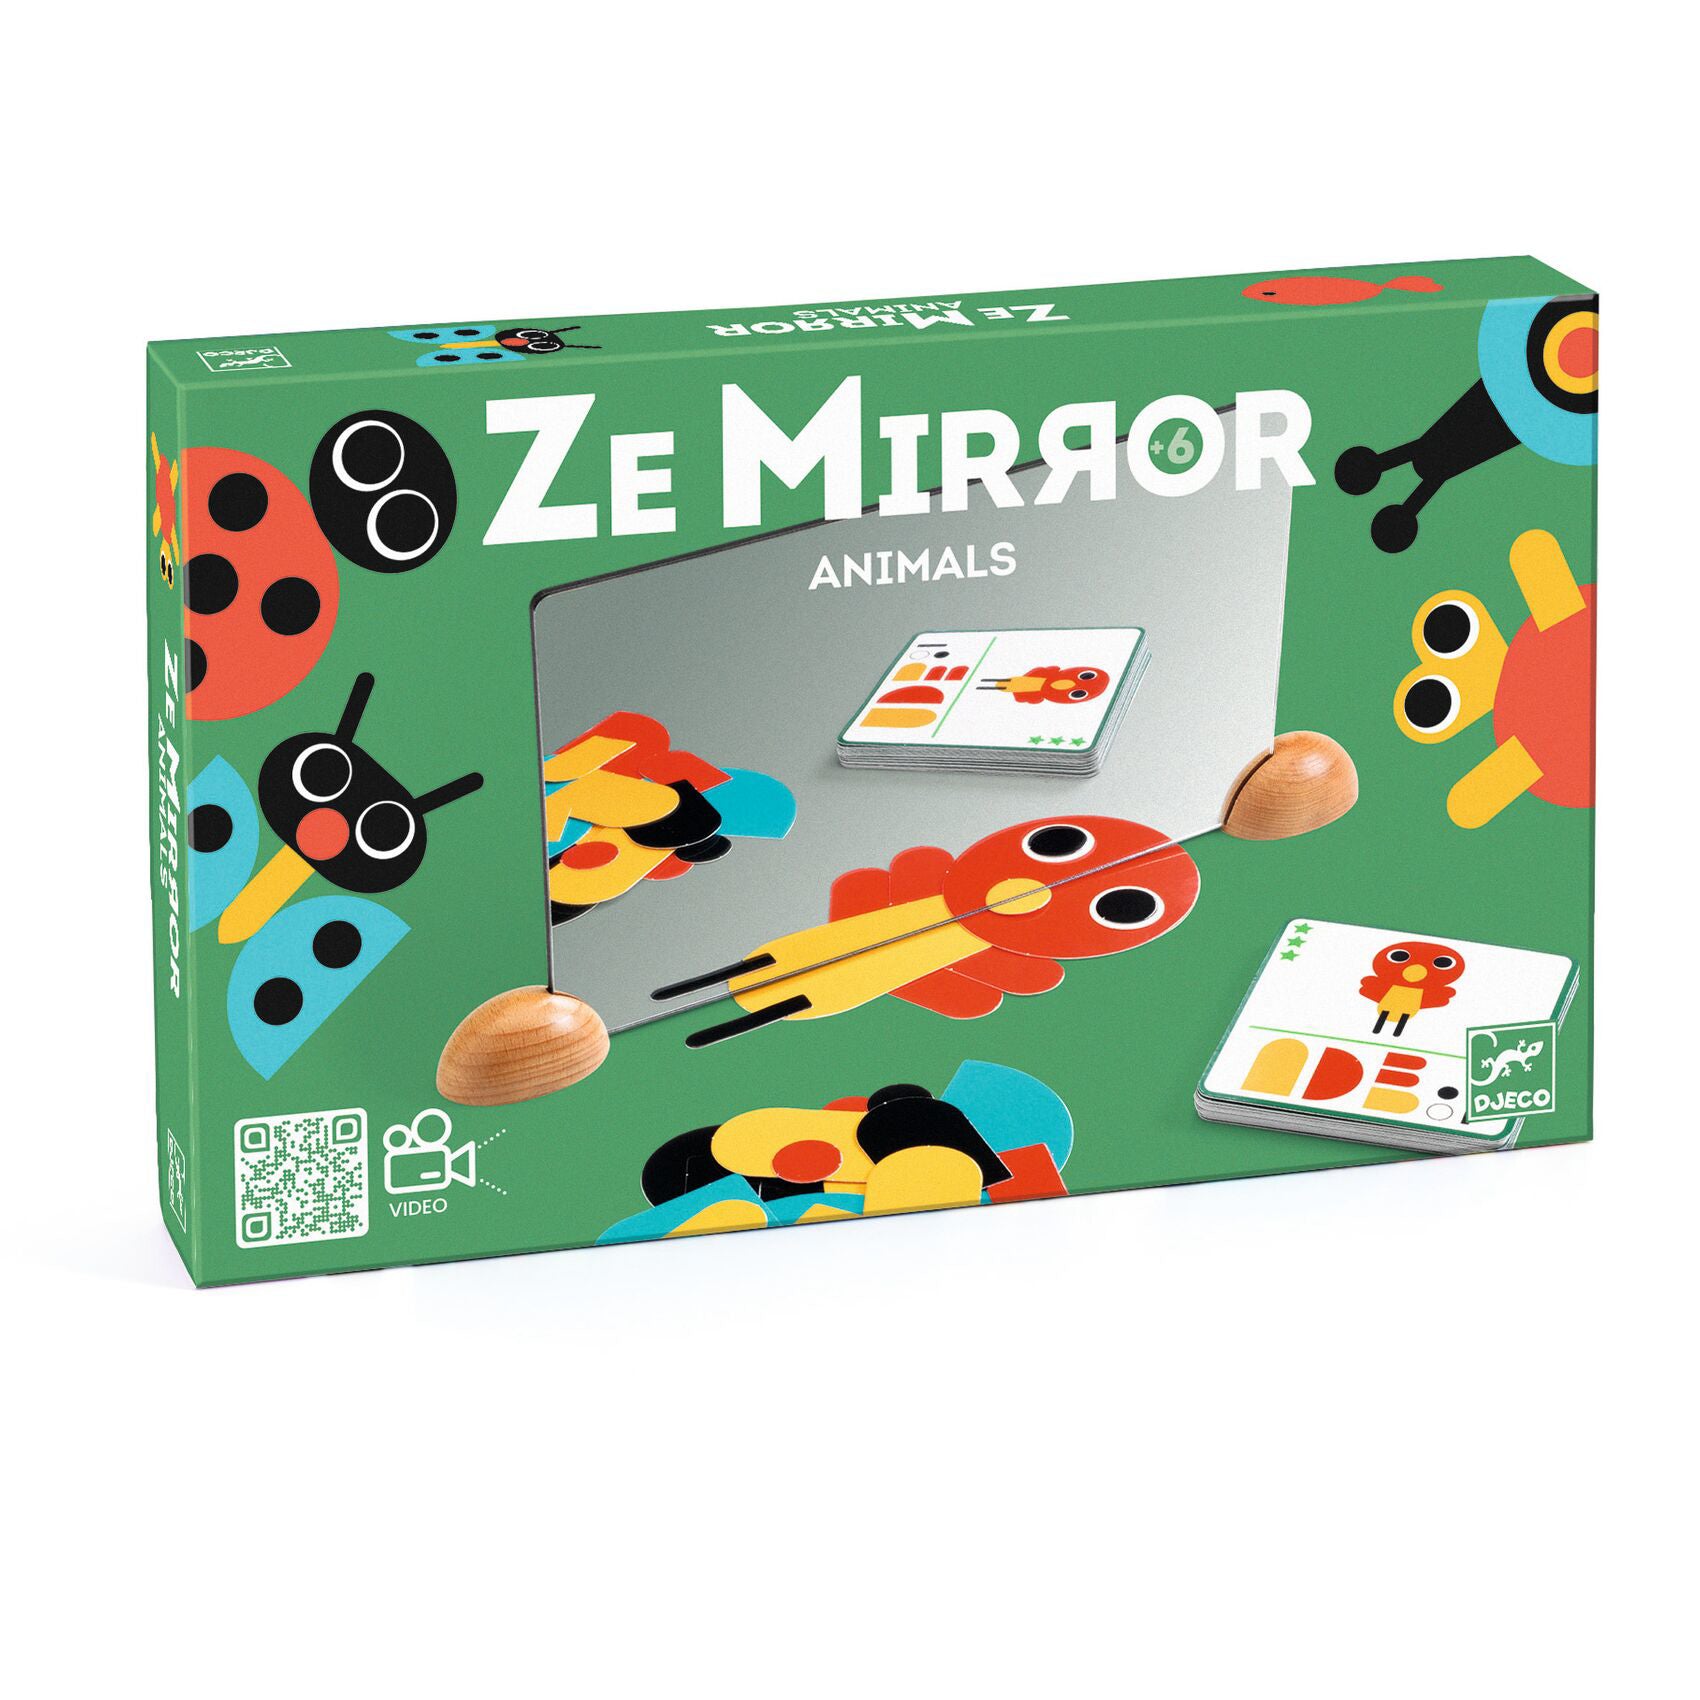 Ze mirror / Animals